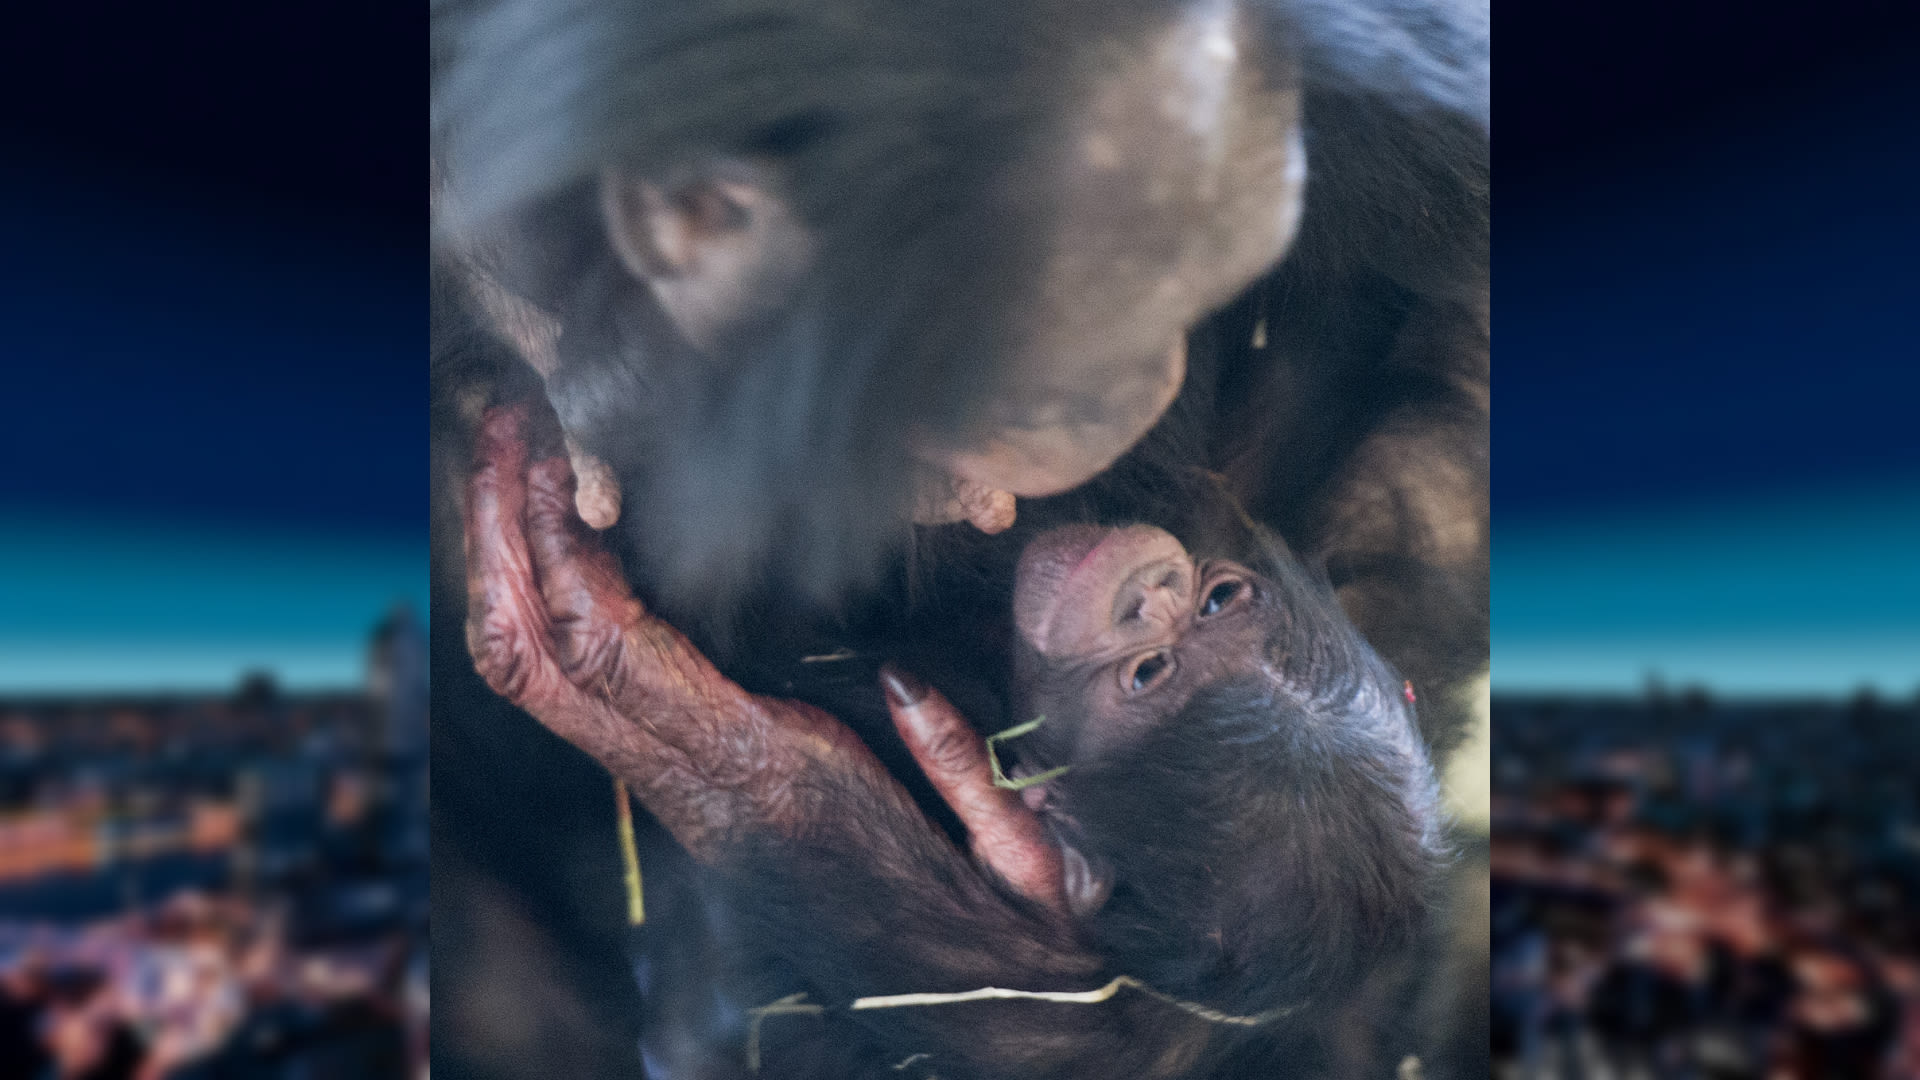 Jubileumjaar in de Apenheul begint goed: bonobo-baby geboren